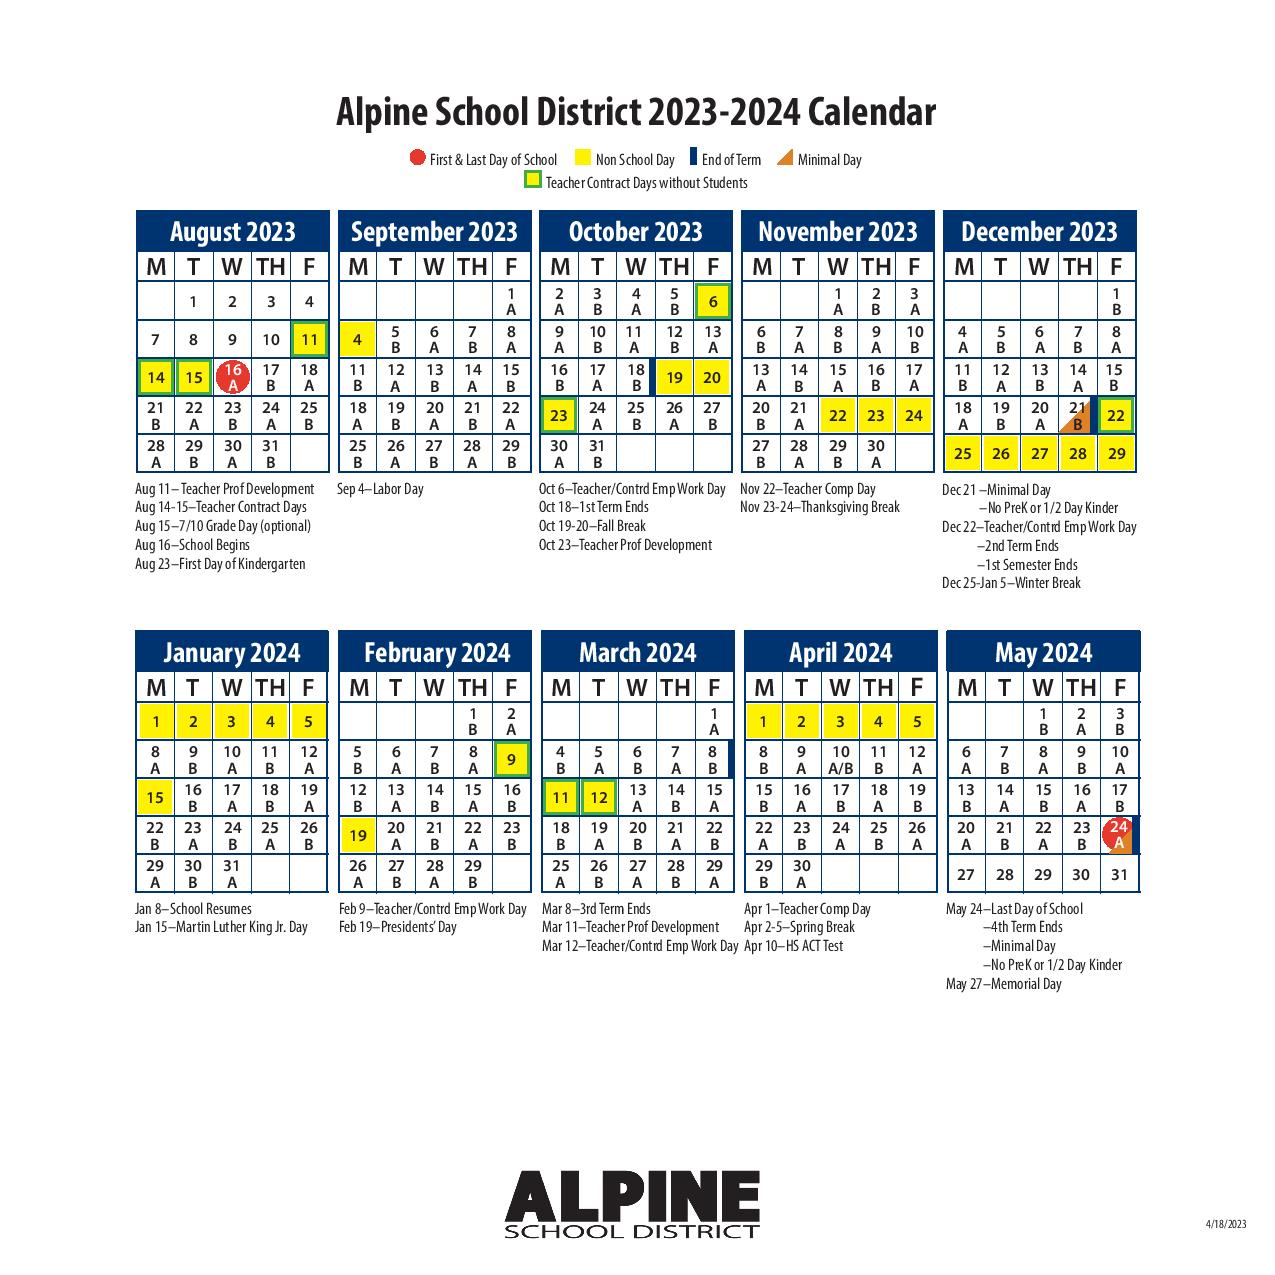 Alpine School District Calendar 2023-2024 PDF